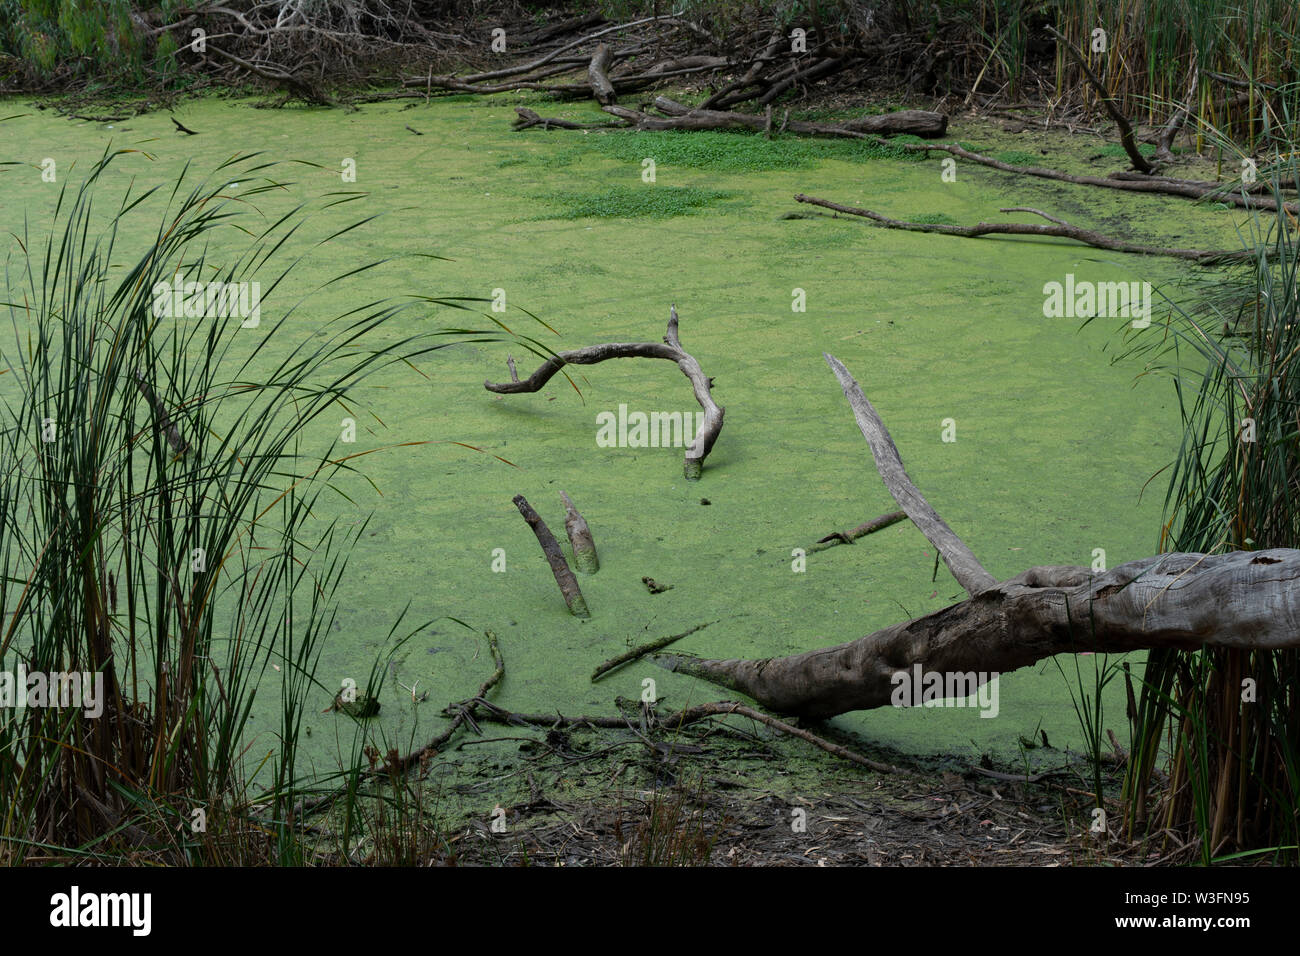 Foto von einem kleinen grünen Sumpf im natürlichen Zustand Brücken Park in Santa Cruz, Kalifornien. Stockfoto